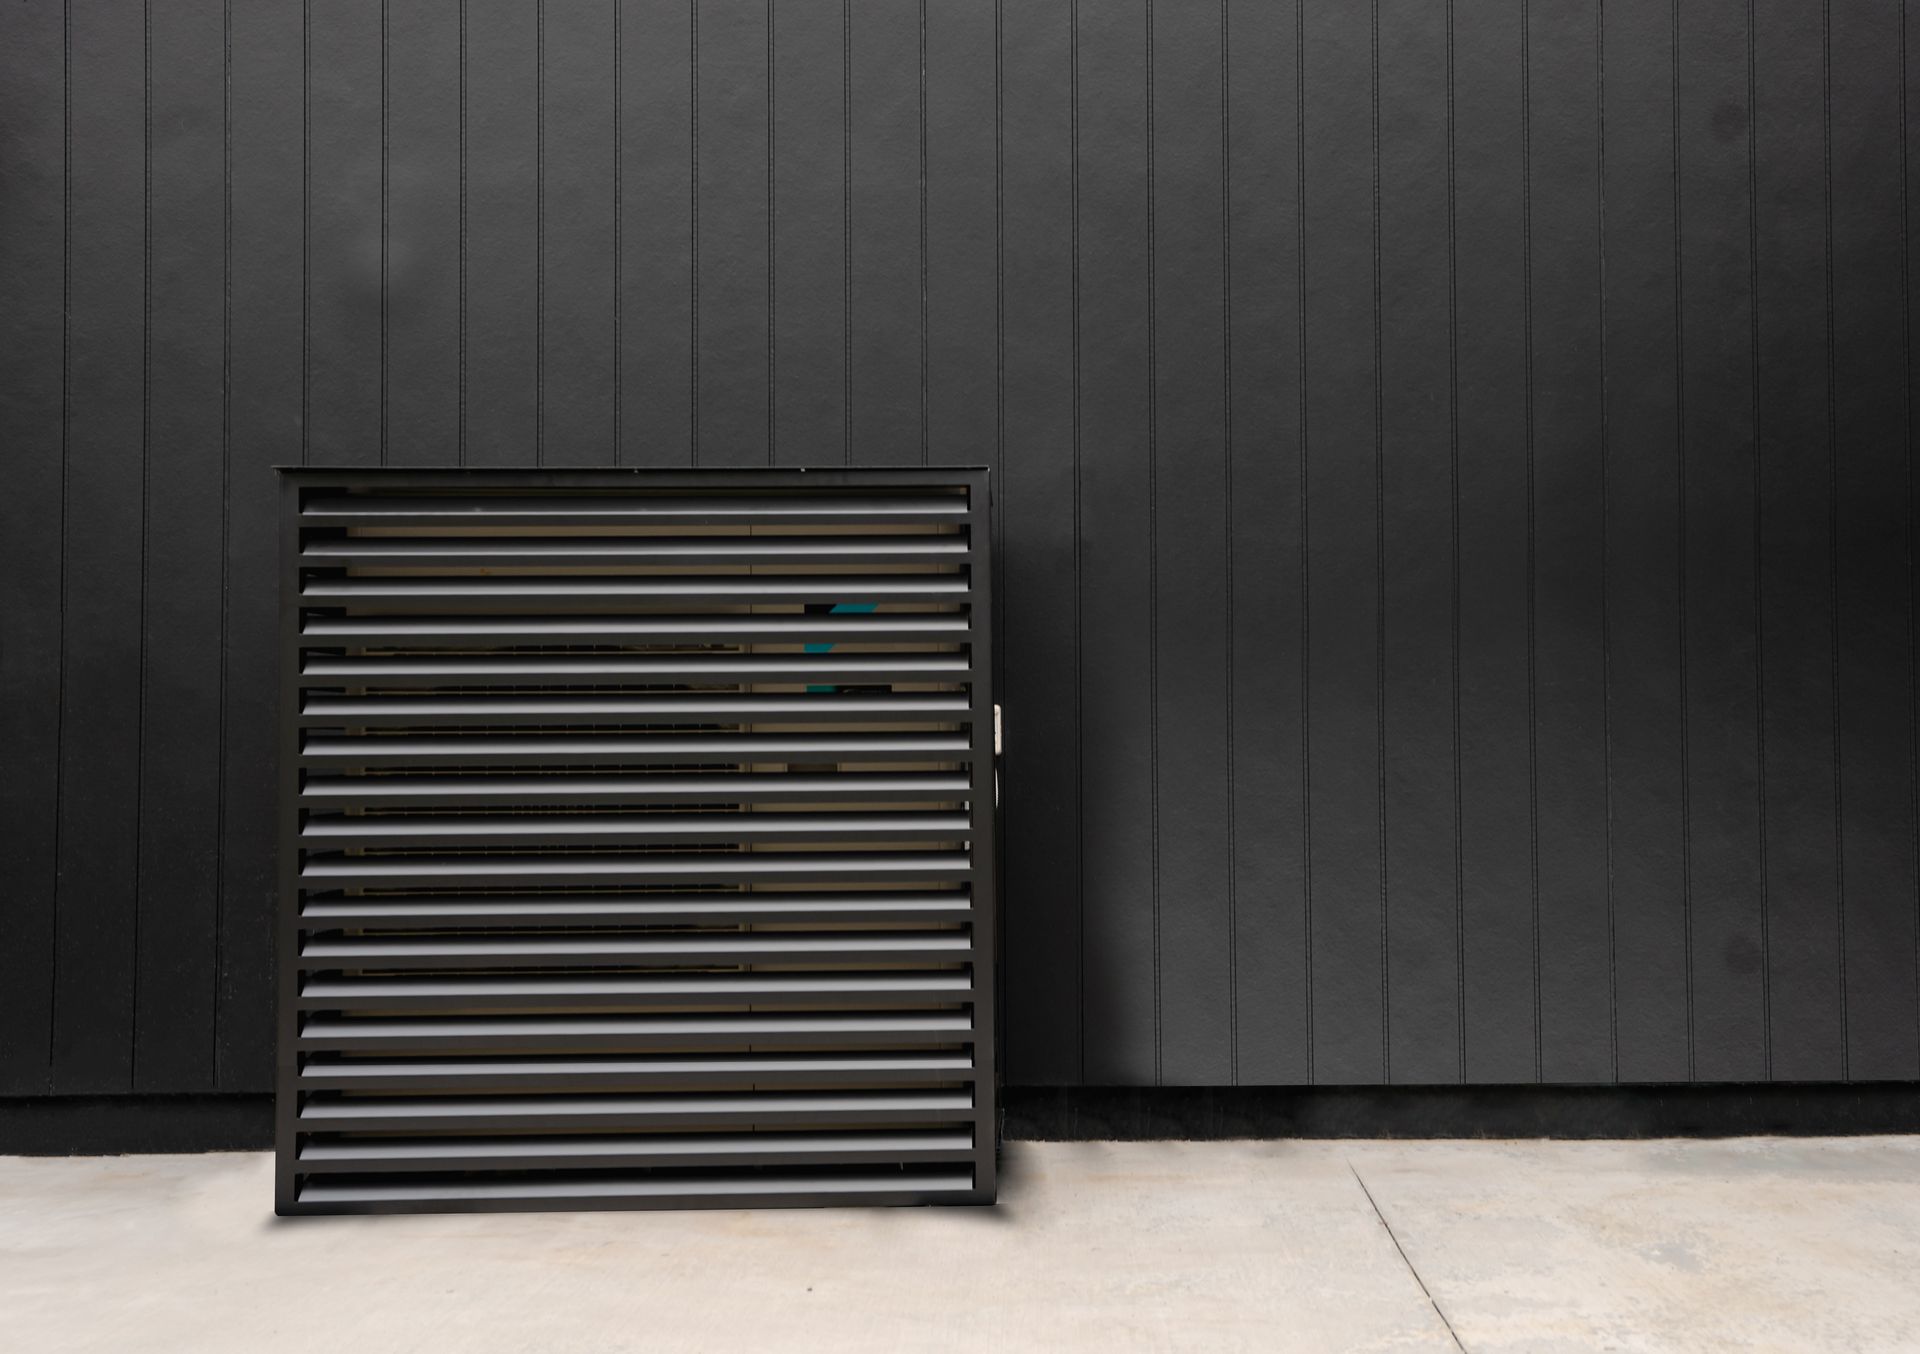 Daikin heat pump outdoor cover against black wall